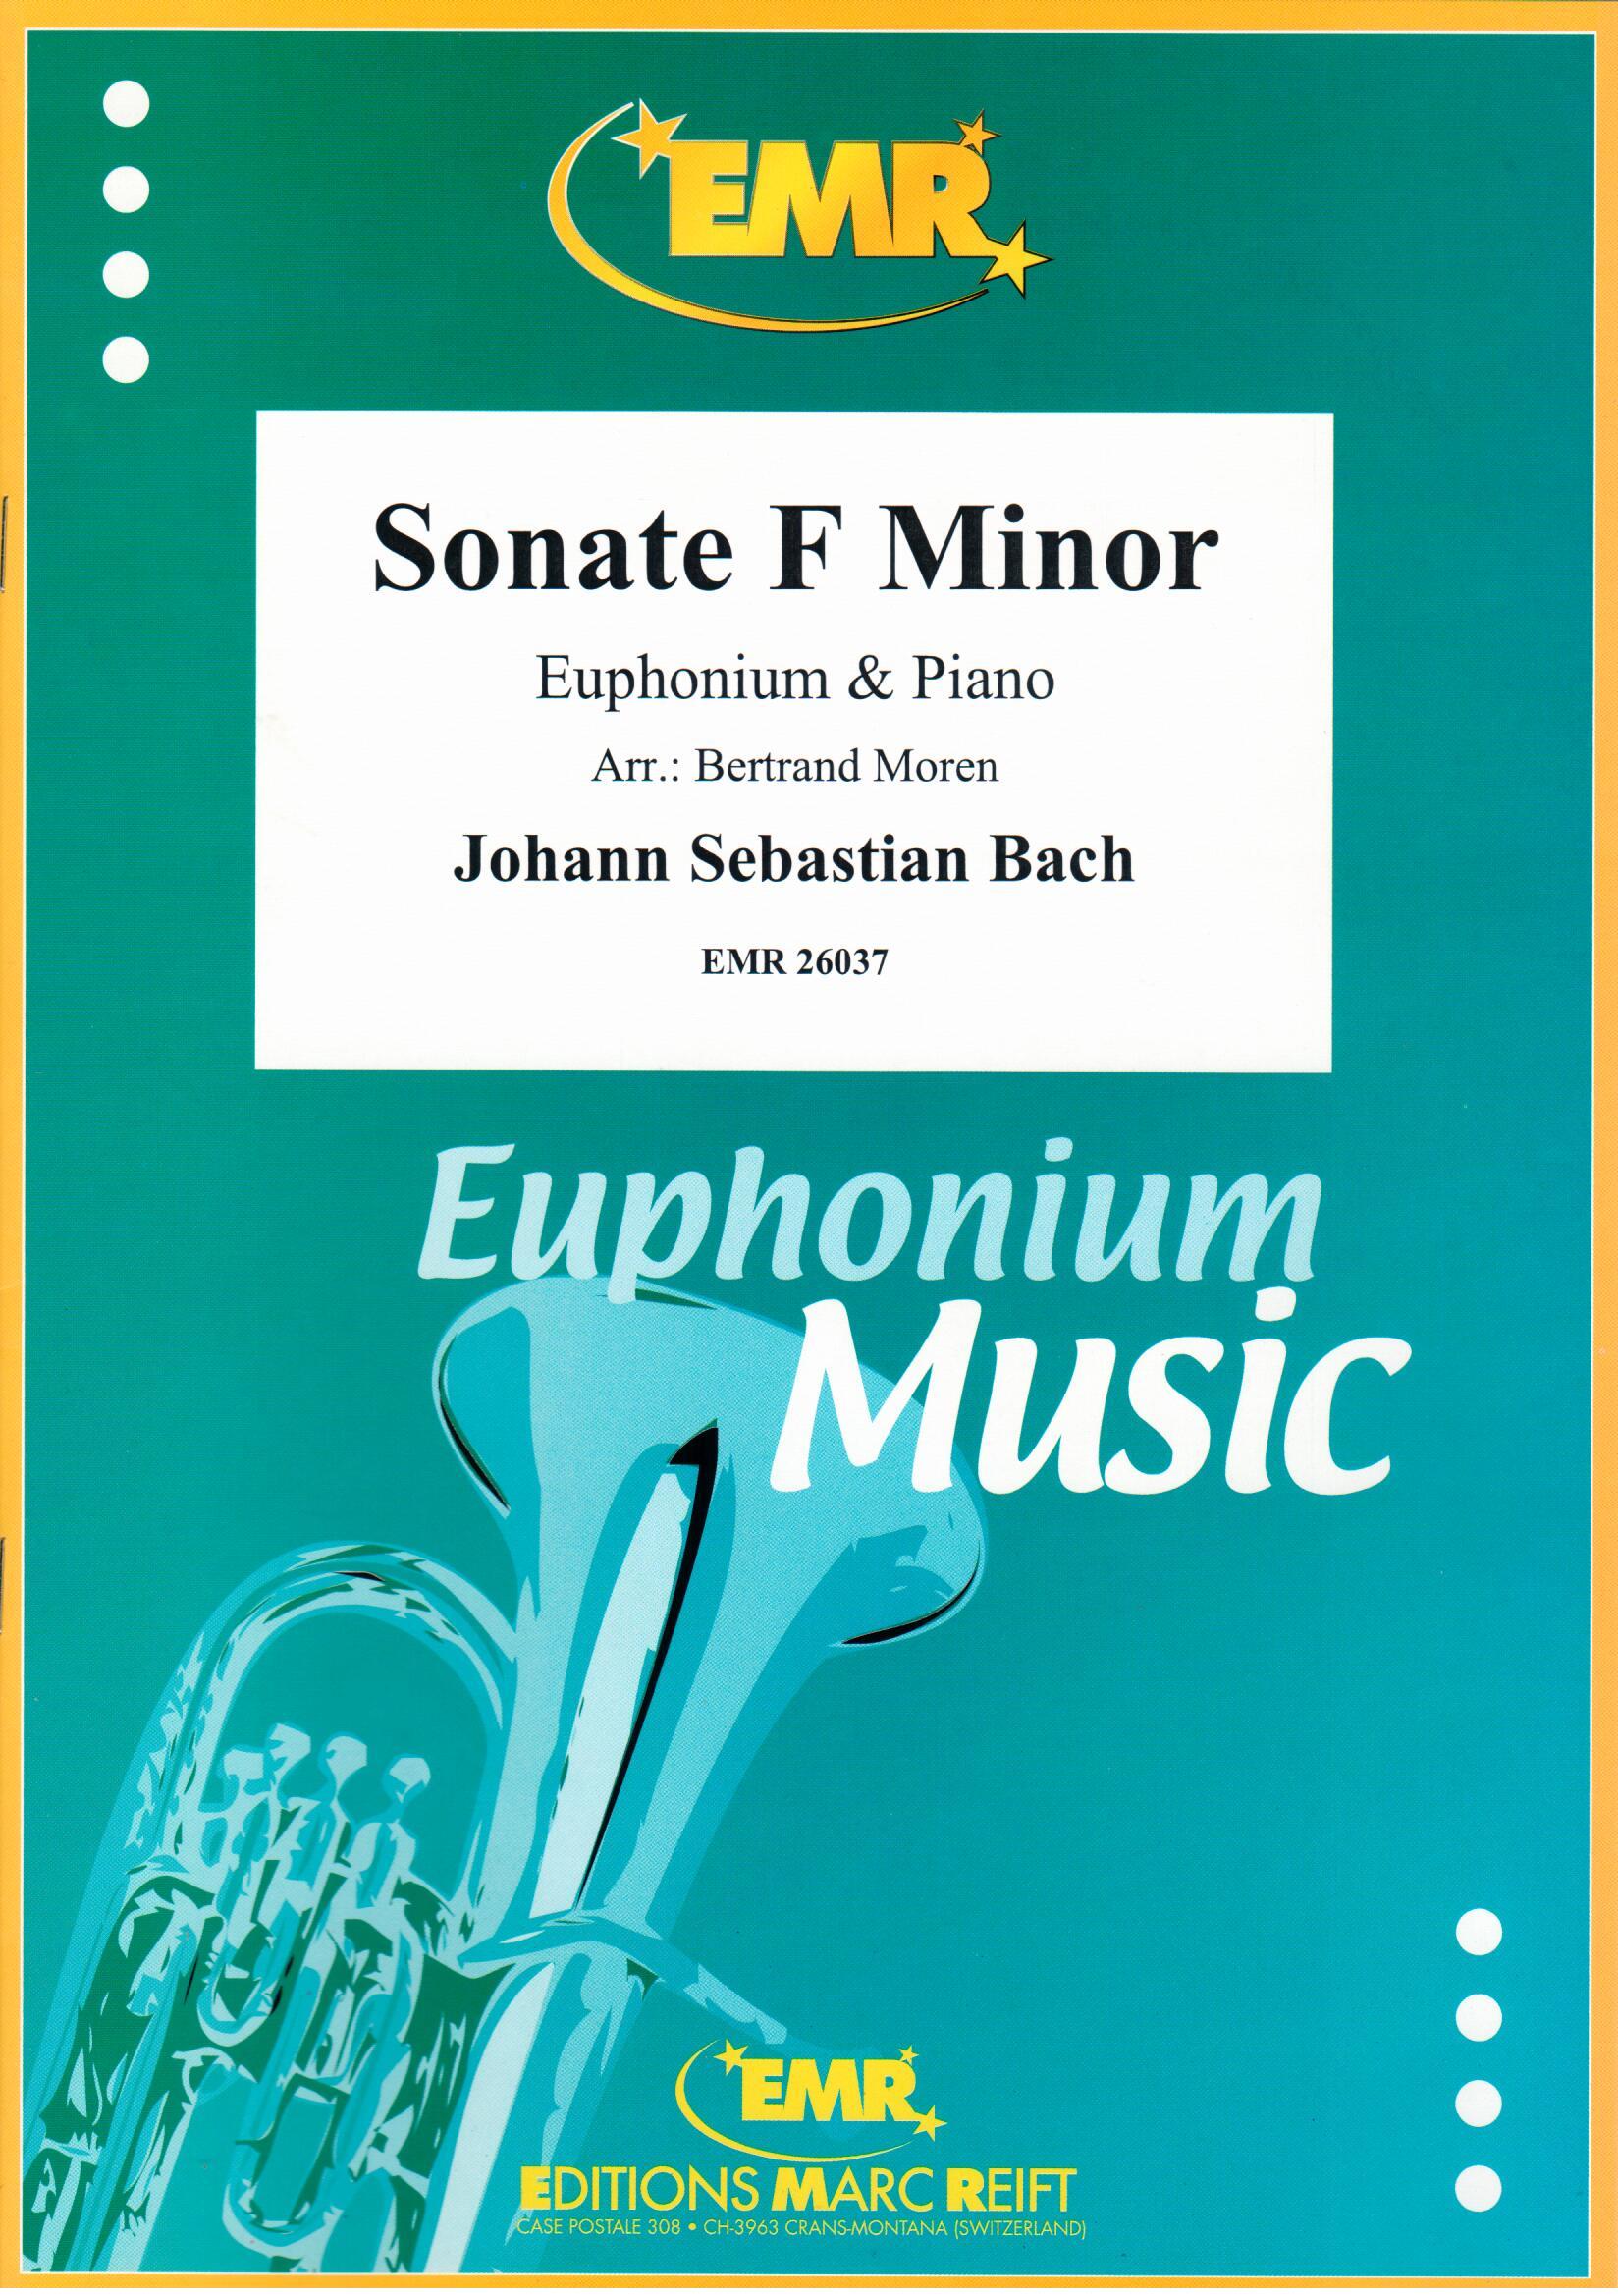 SONATE F MINOR, SOLOS - Euphonium